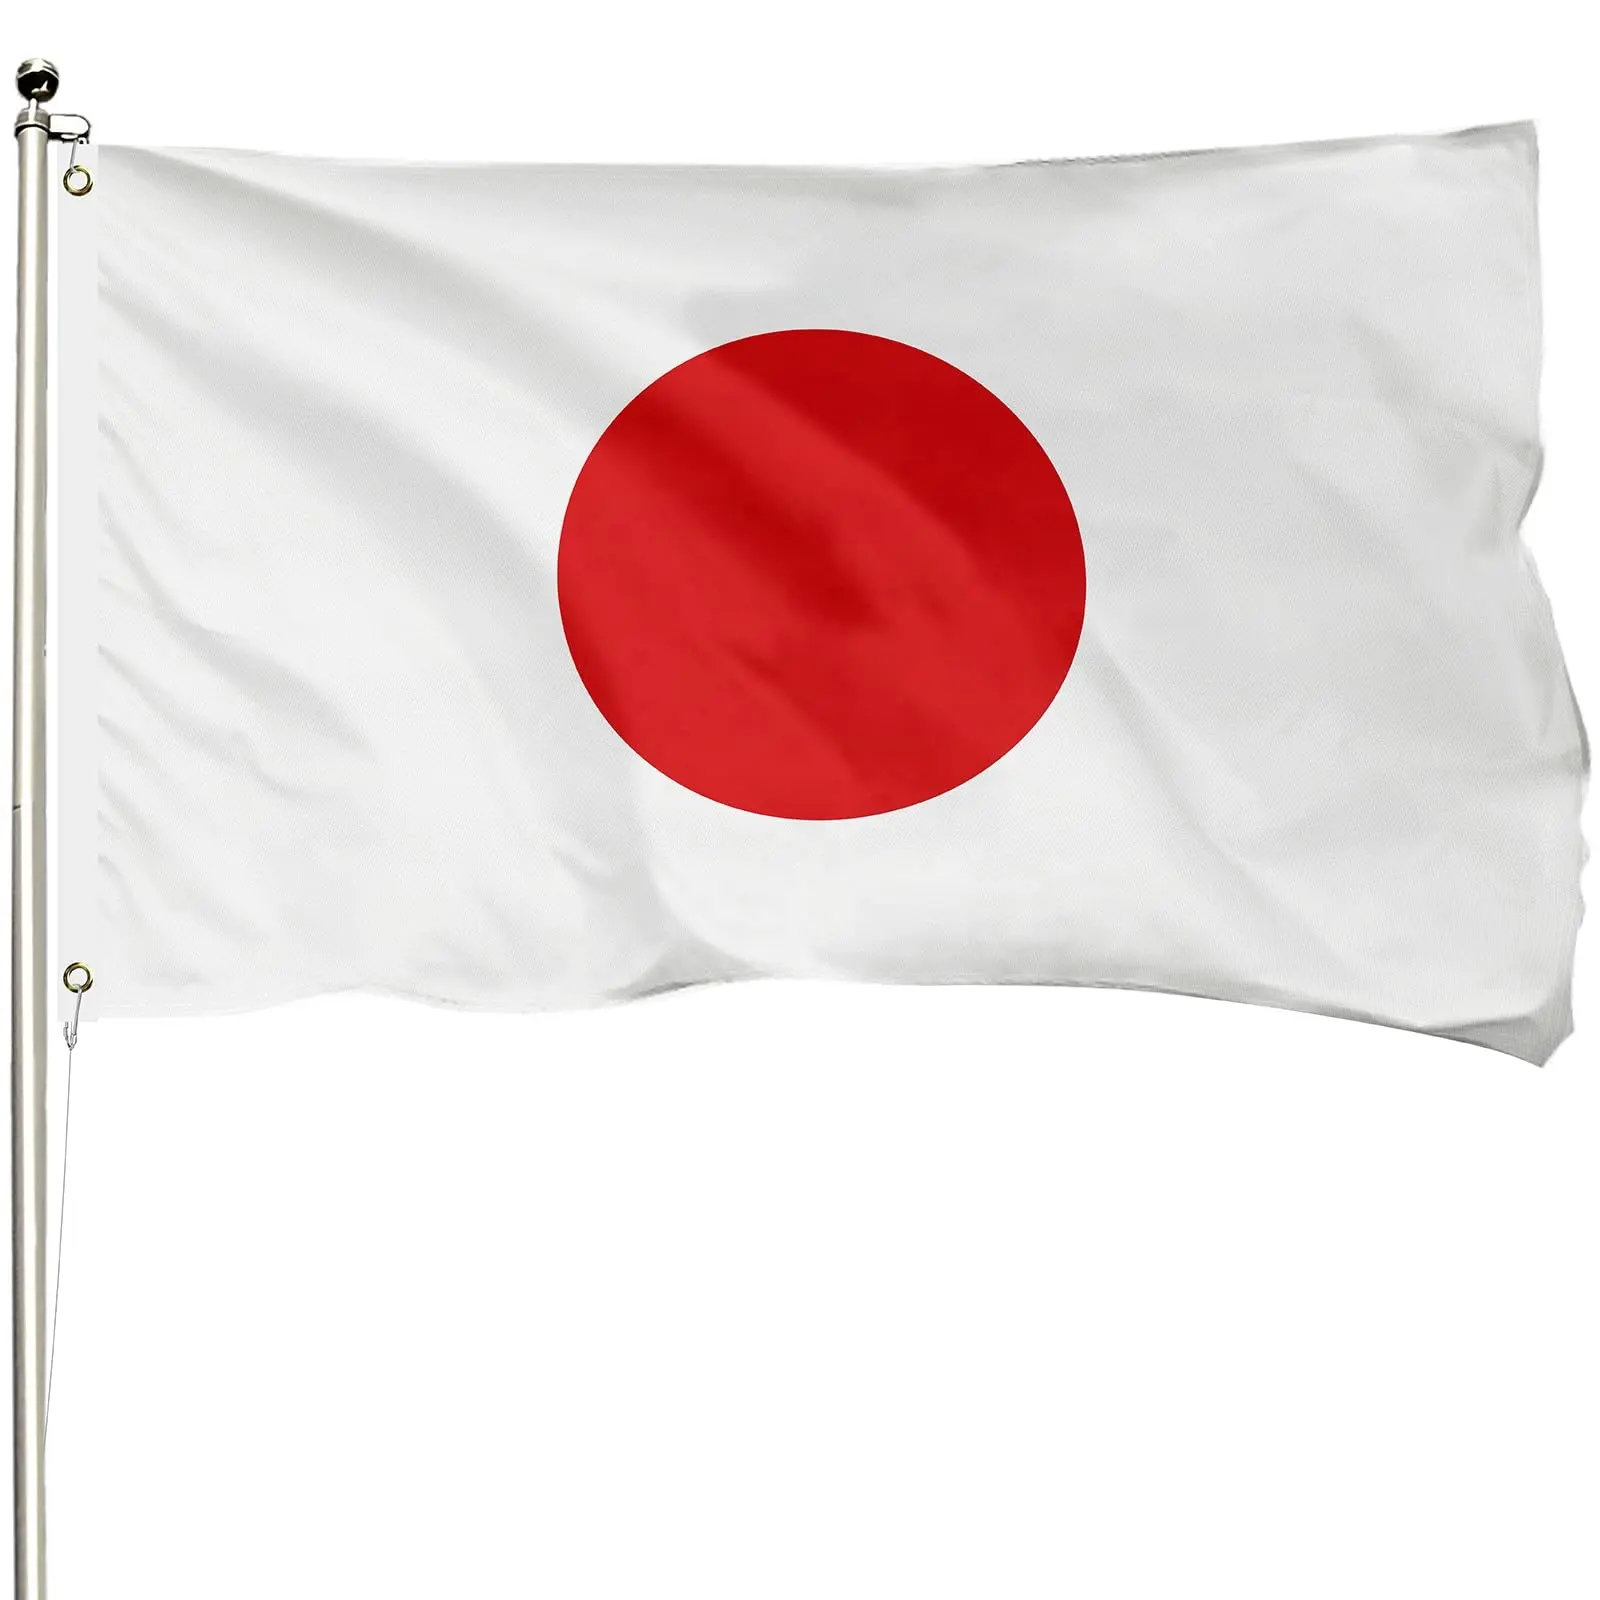 Al Aire Libre puramente hecho a mano resistencia a la decoloración anti-desgarro Bandera de Japón 400d poliéster reforzado 3x5ft Bandera de decoraciones japonesas